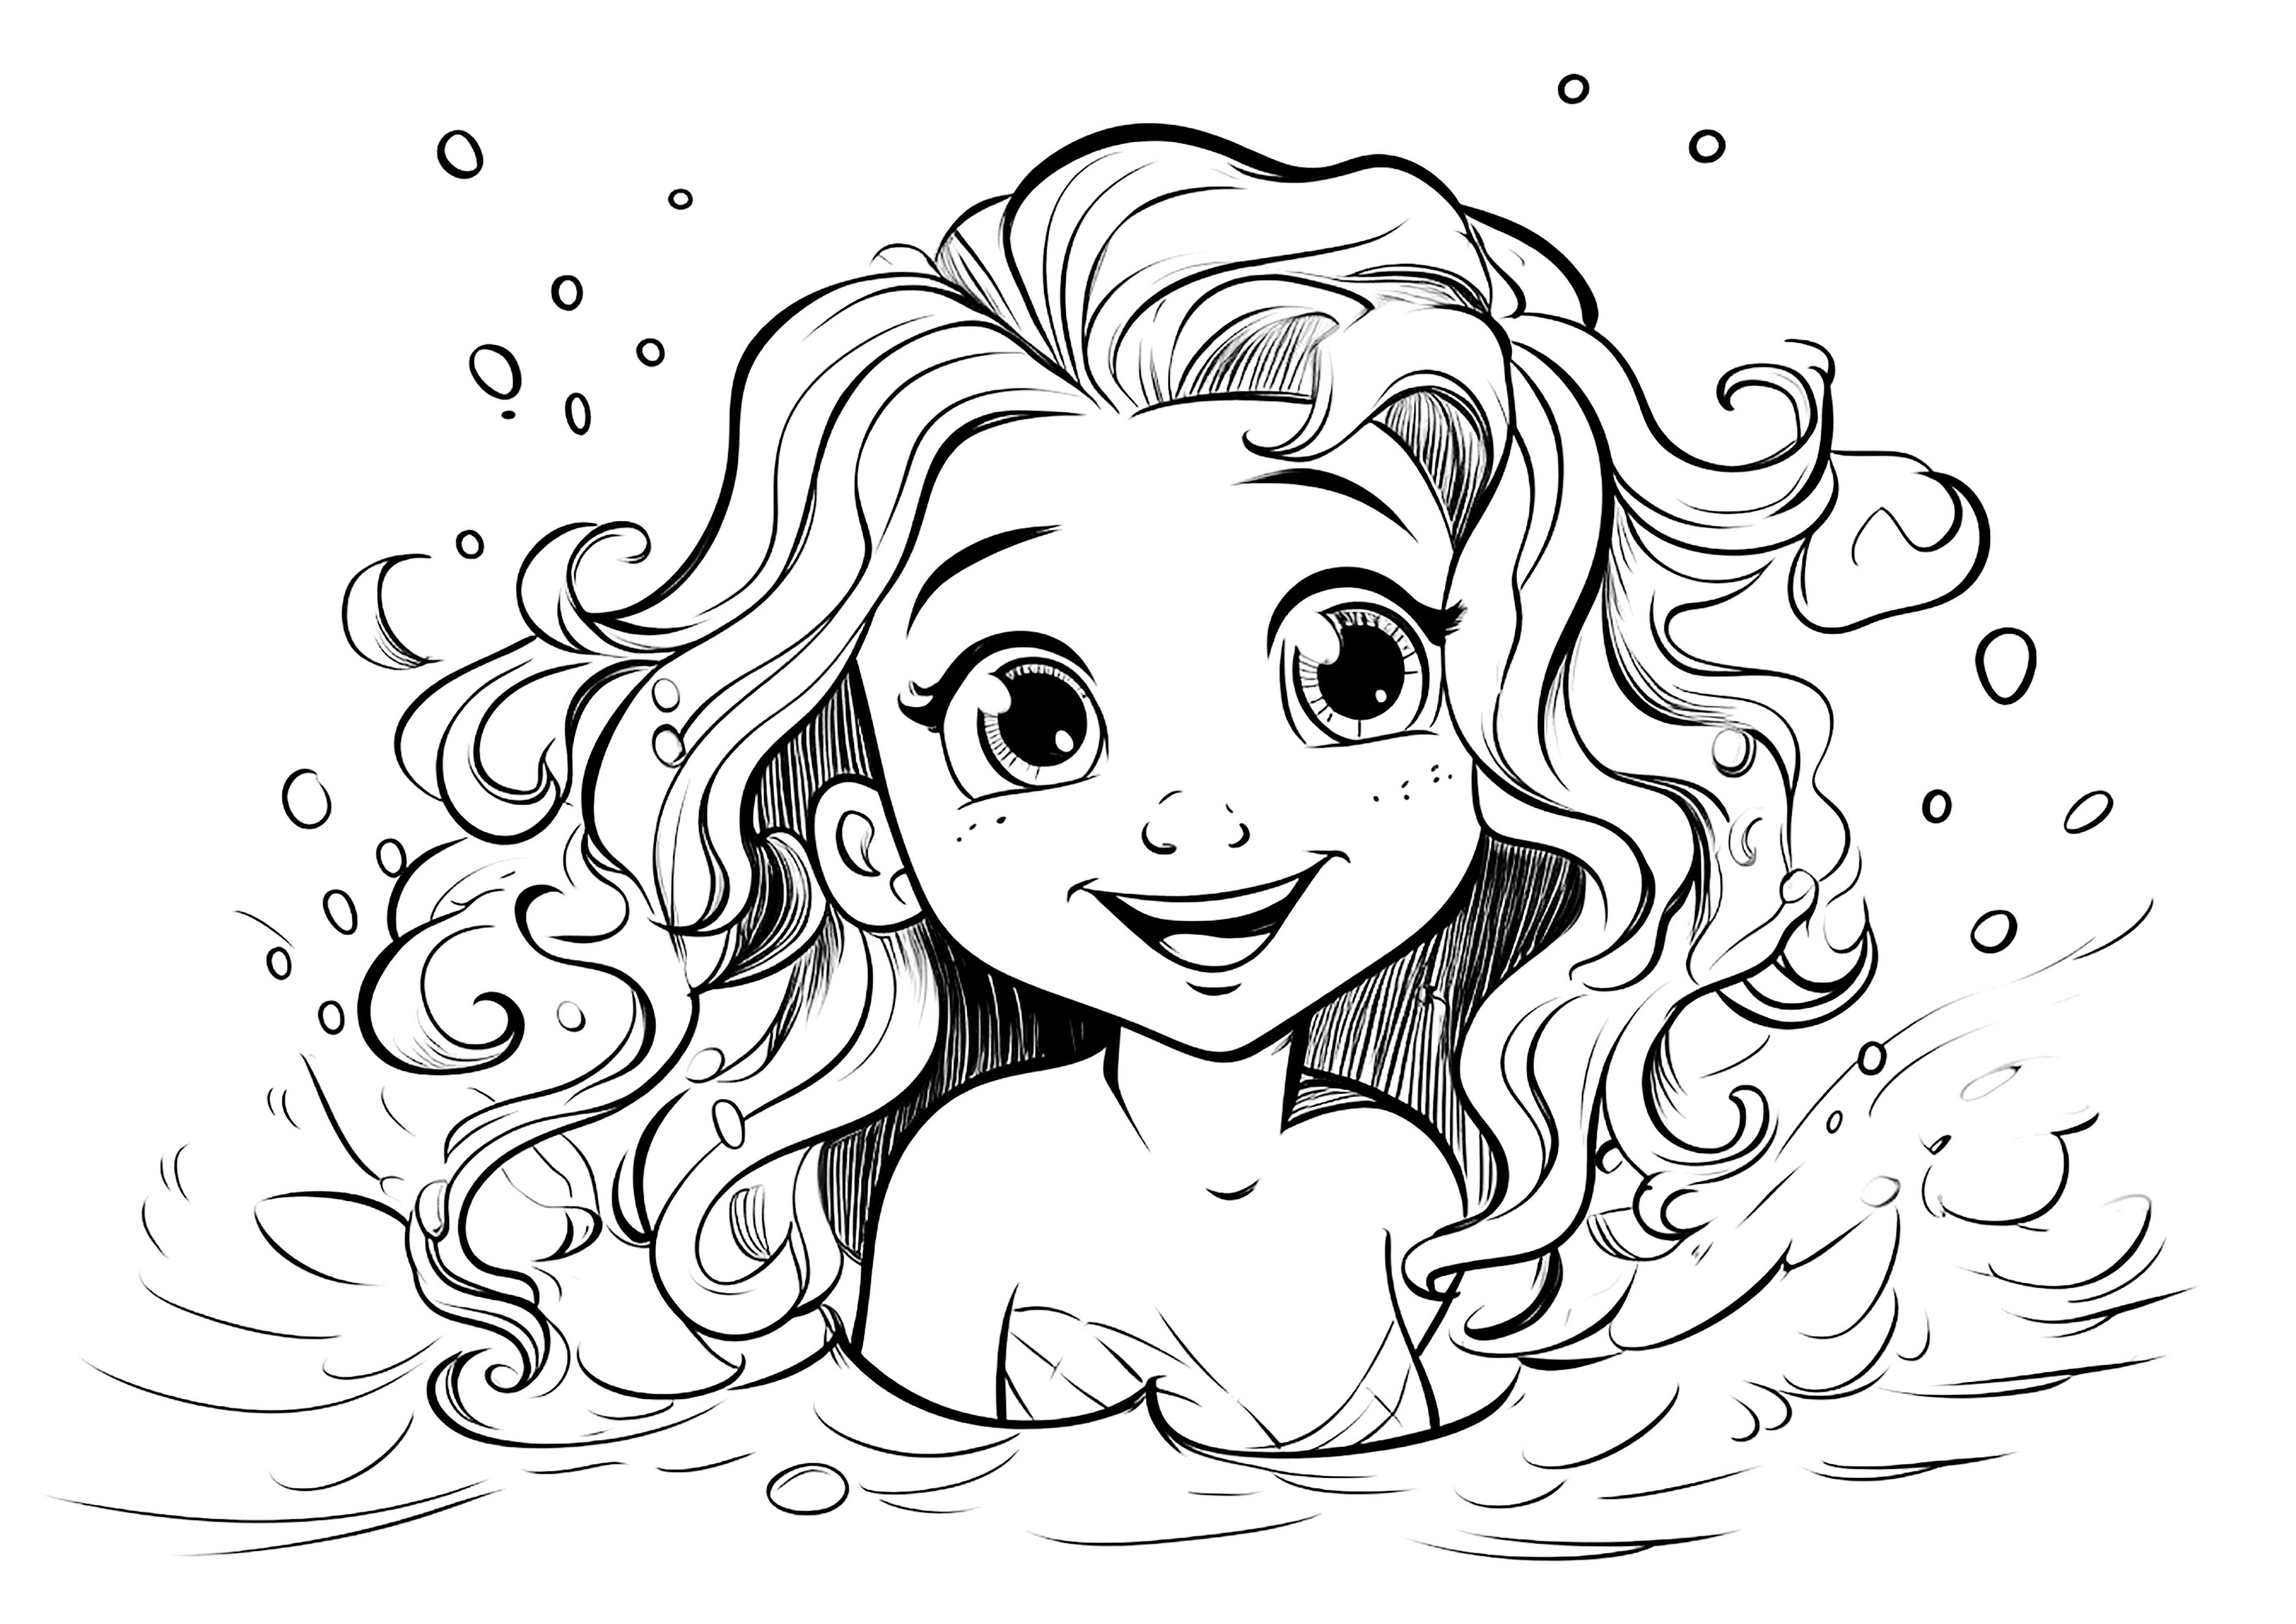 Bonita sirena saliendo del mar. Un diseño inspirado en el estilo Pixar